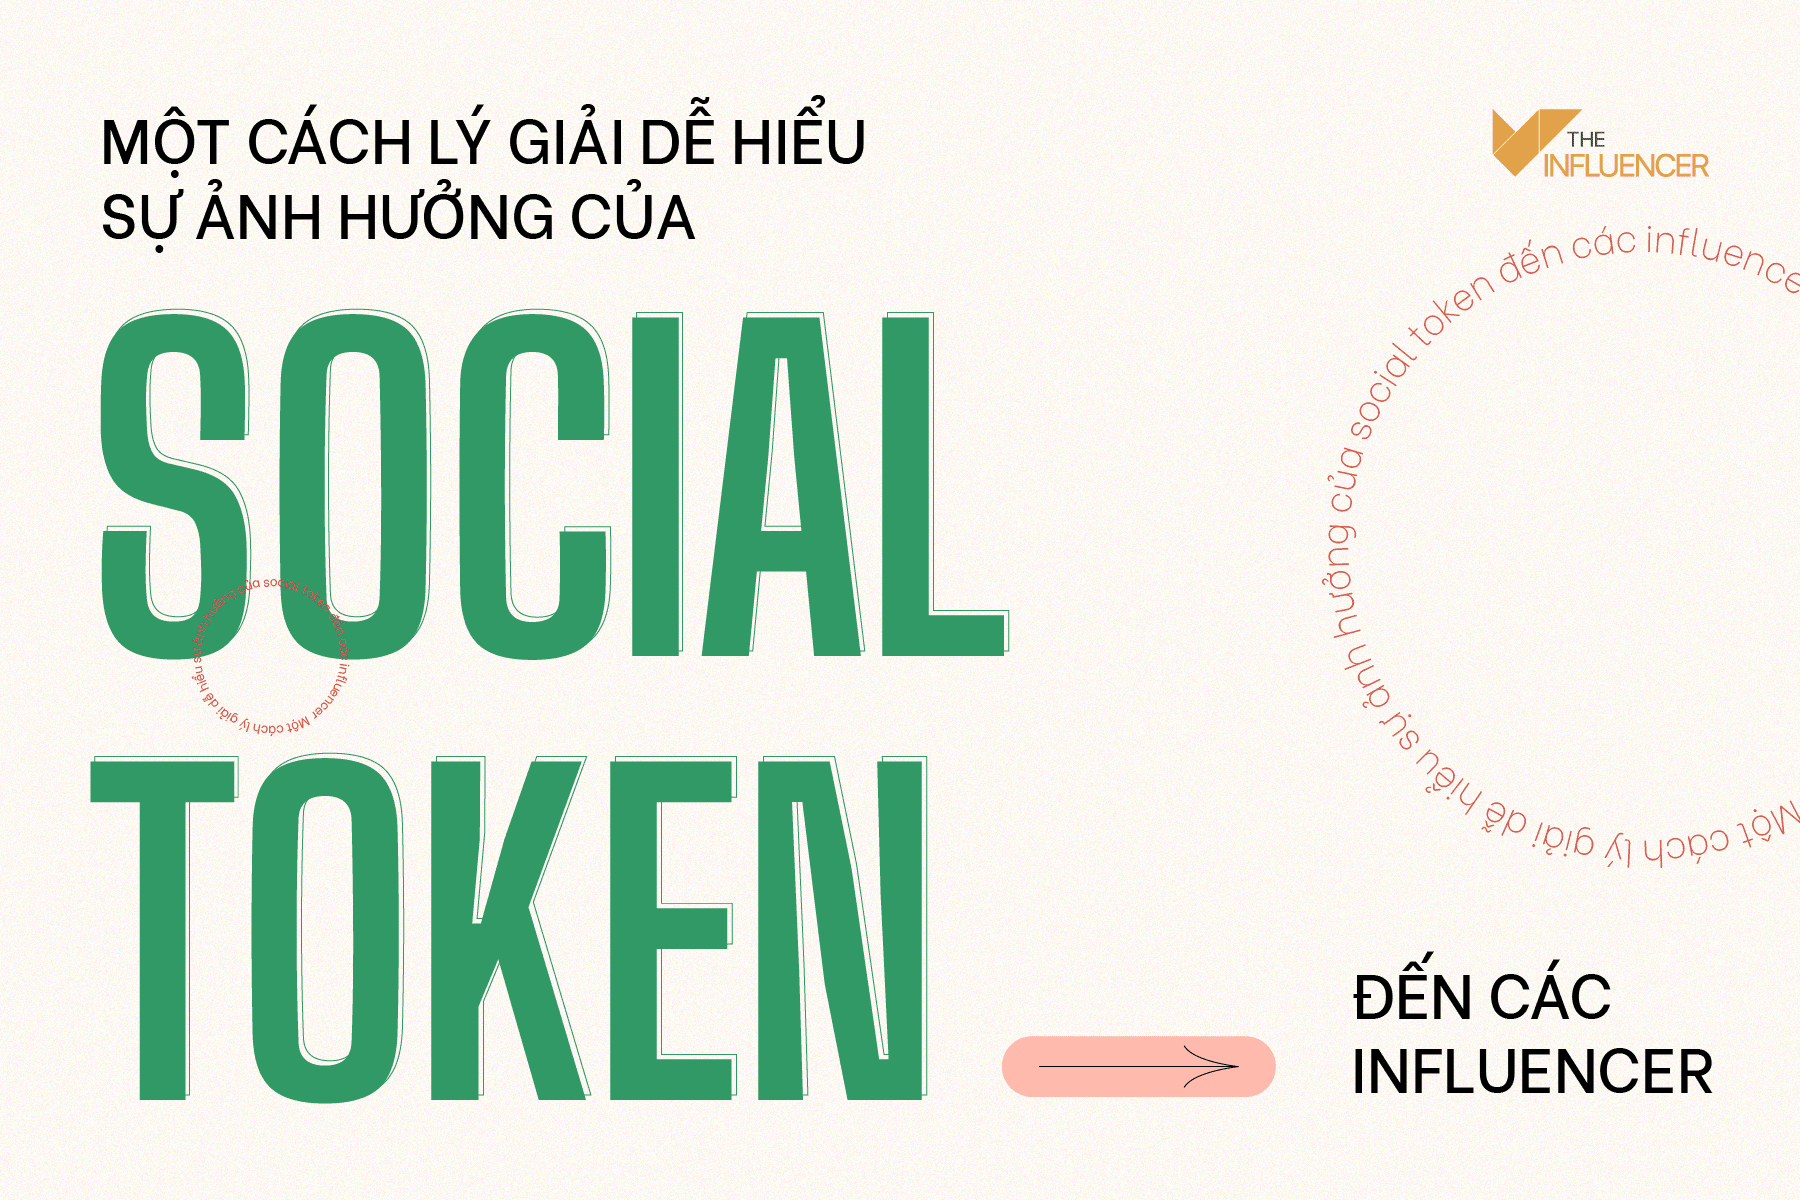 Một cách lý giải dễ hiểu sự ảnh hưởng của social token đến các influencer